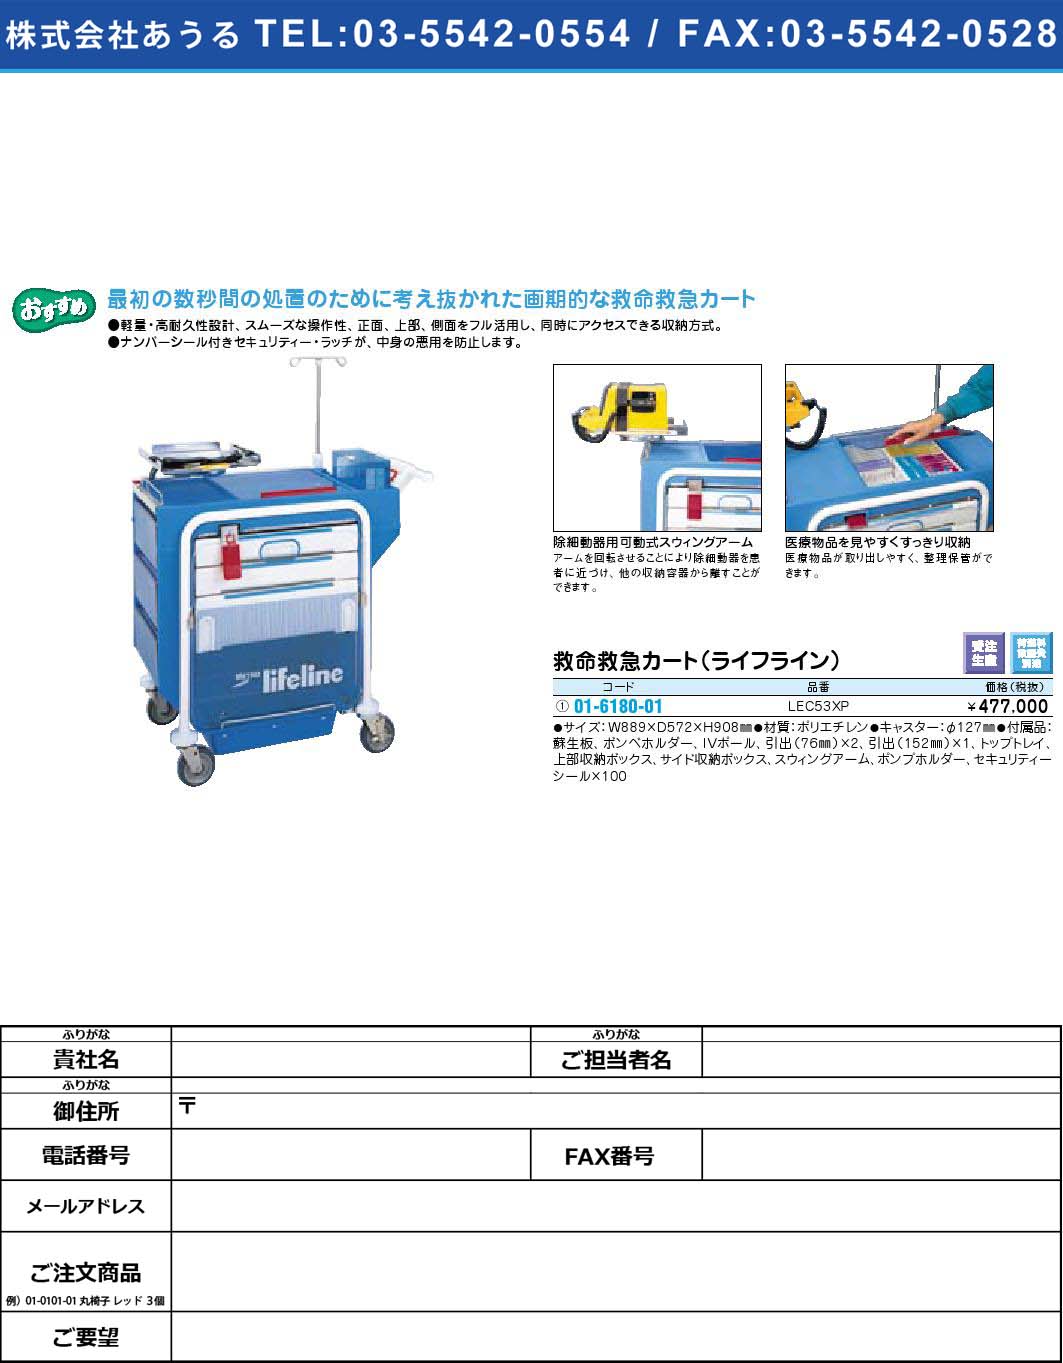 救命救急カート（ライフライン）LEC53XP(01-6180-01)【1個単位】【2009